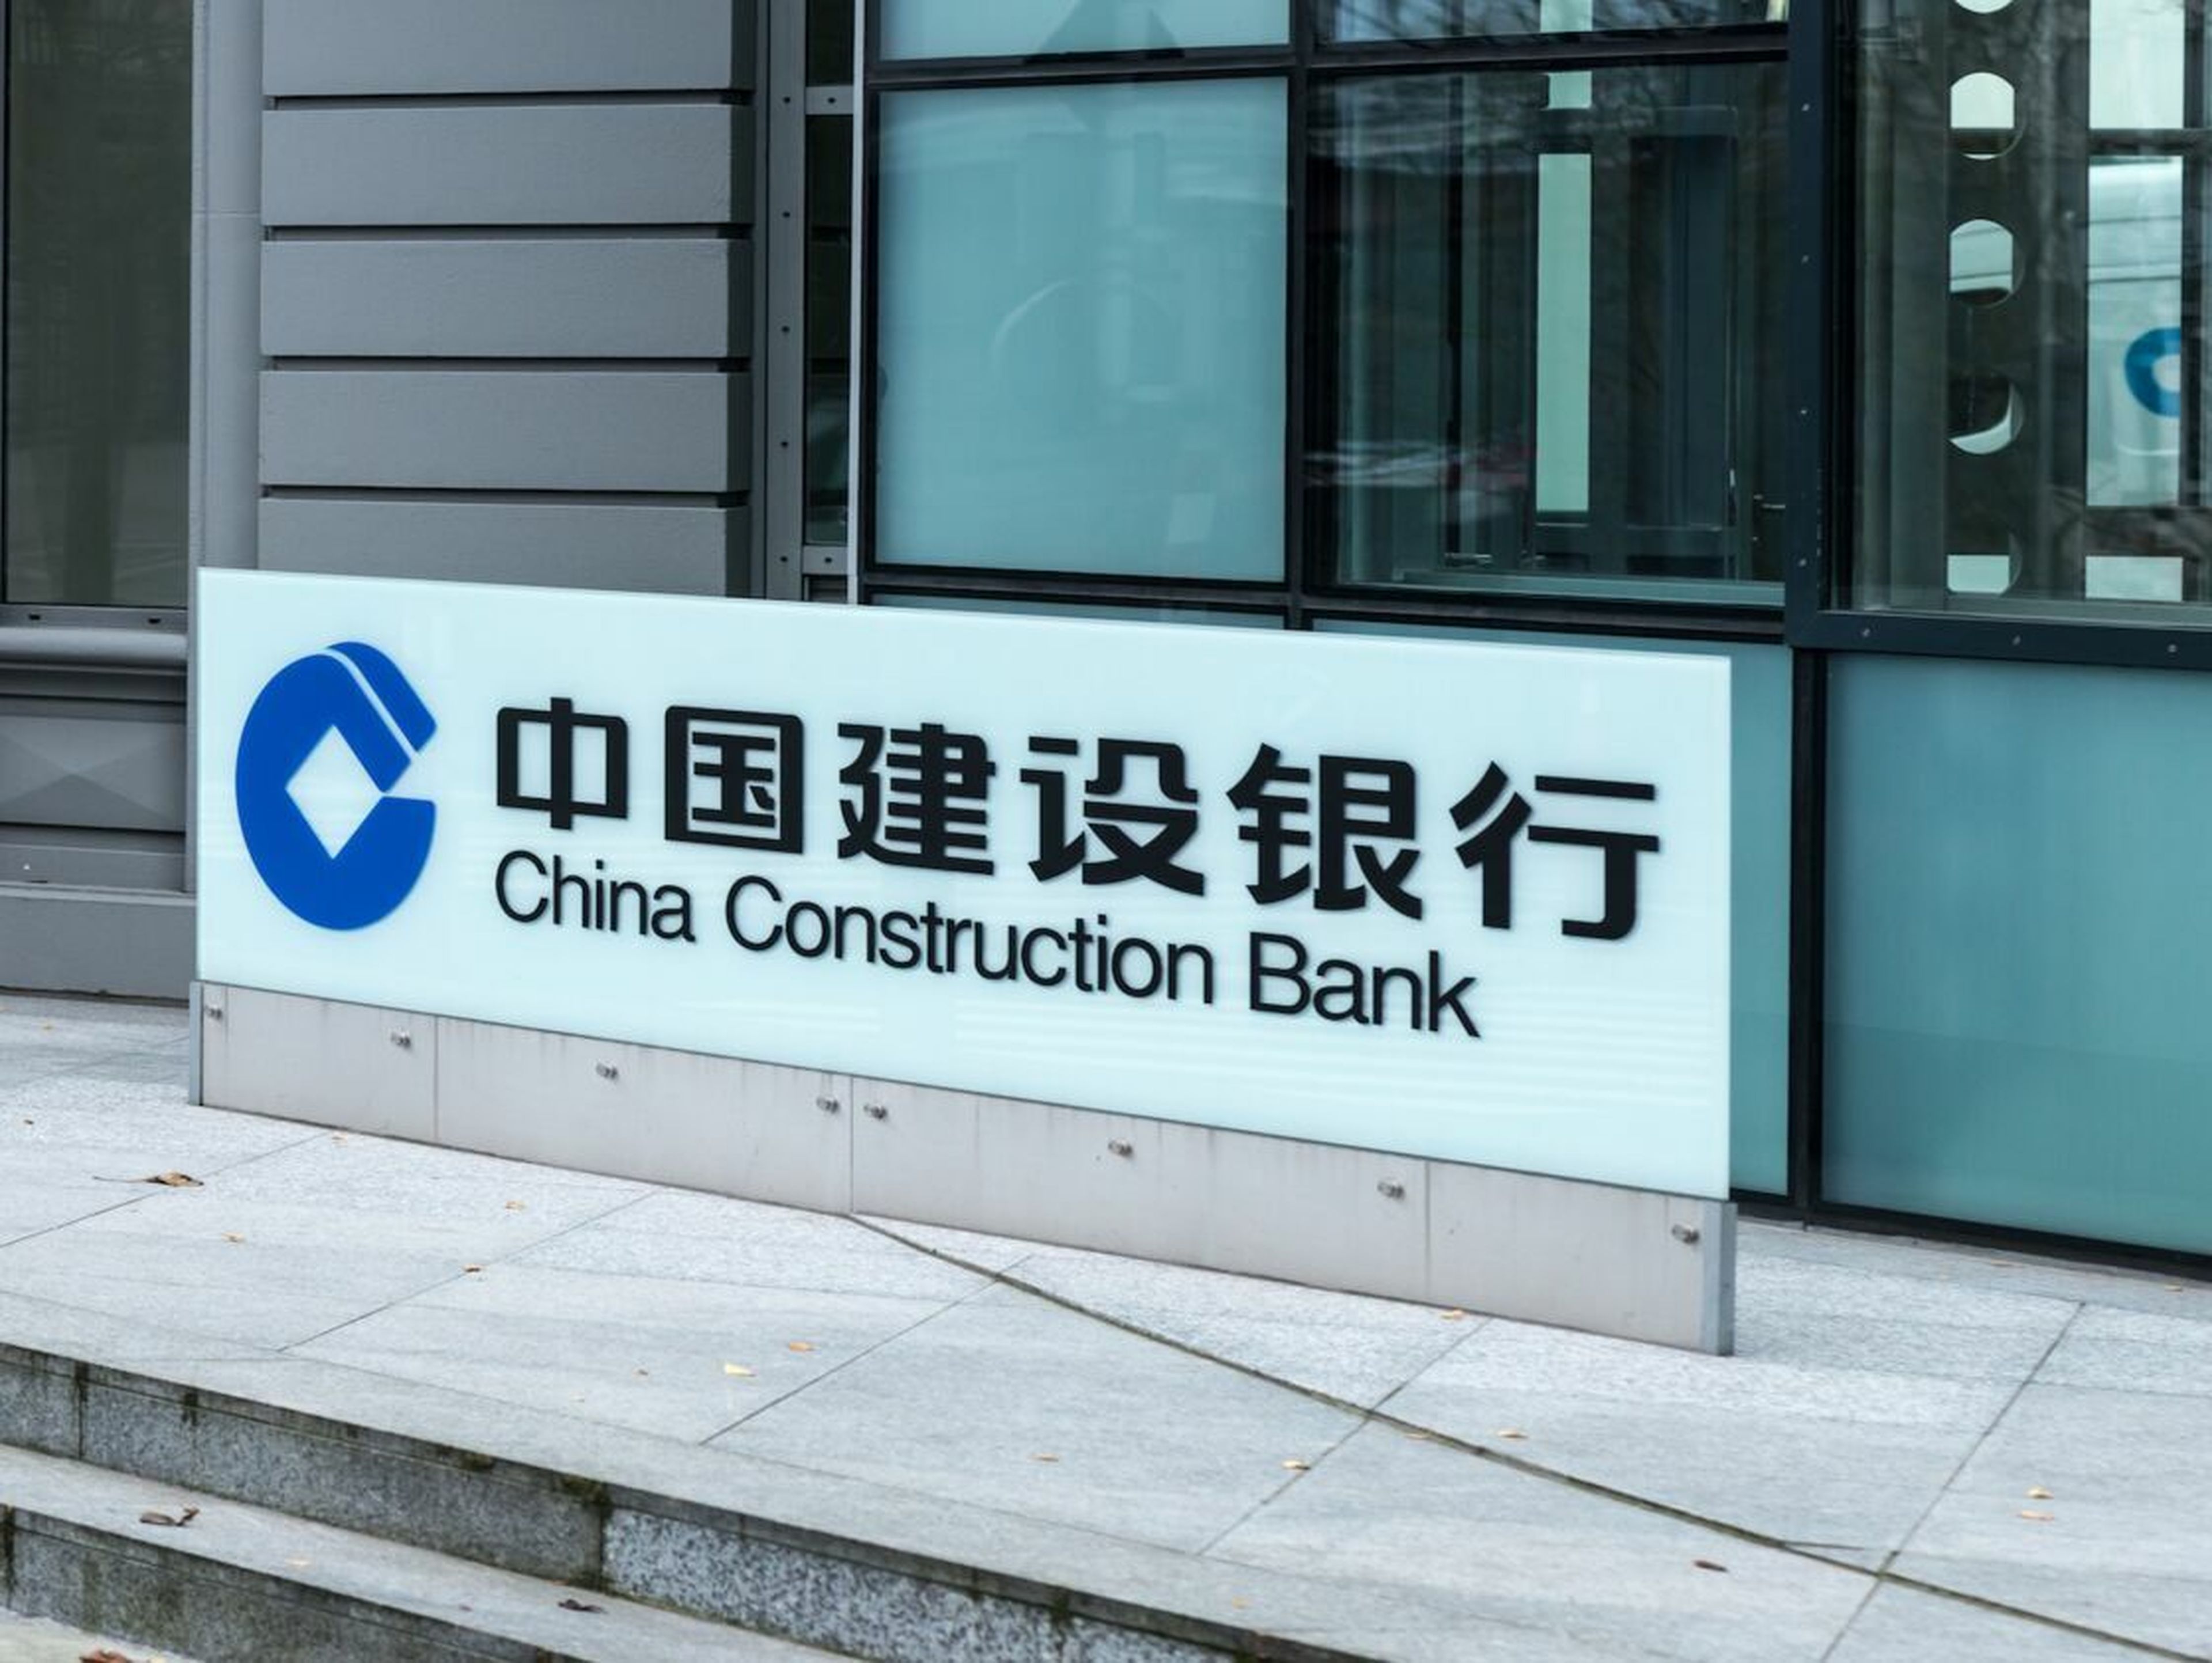 Instalaciones de China Construction Bank, uno de los bancos más grandes de China.